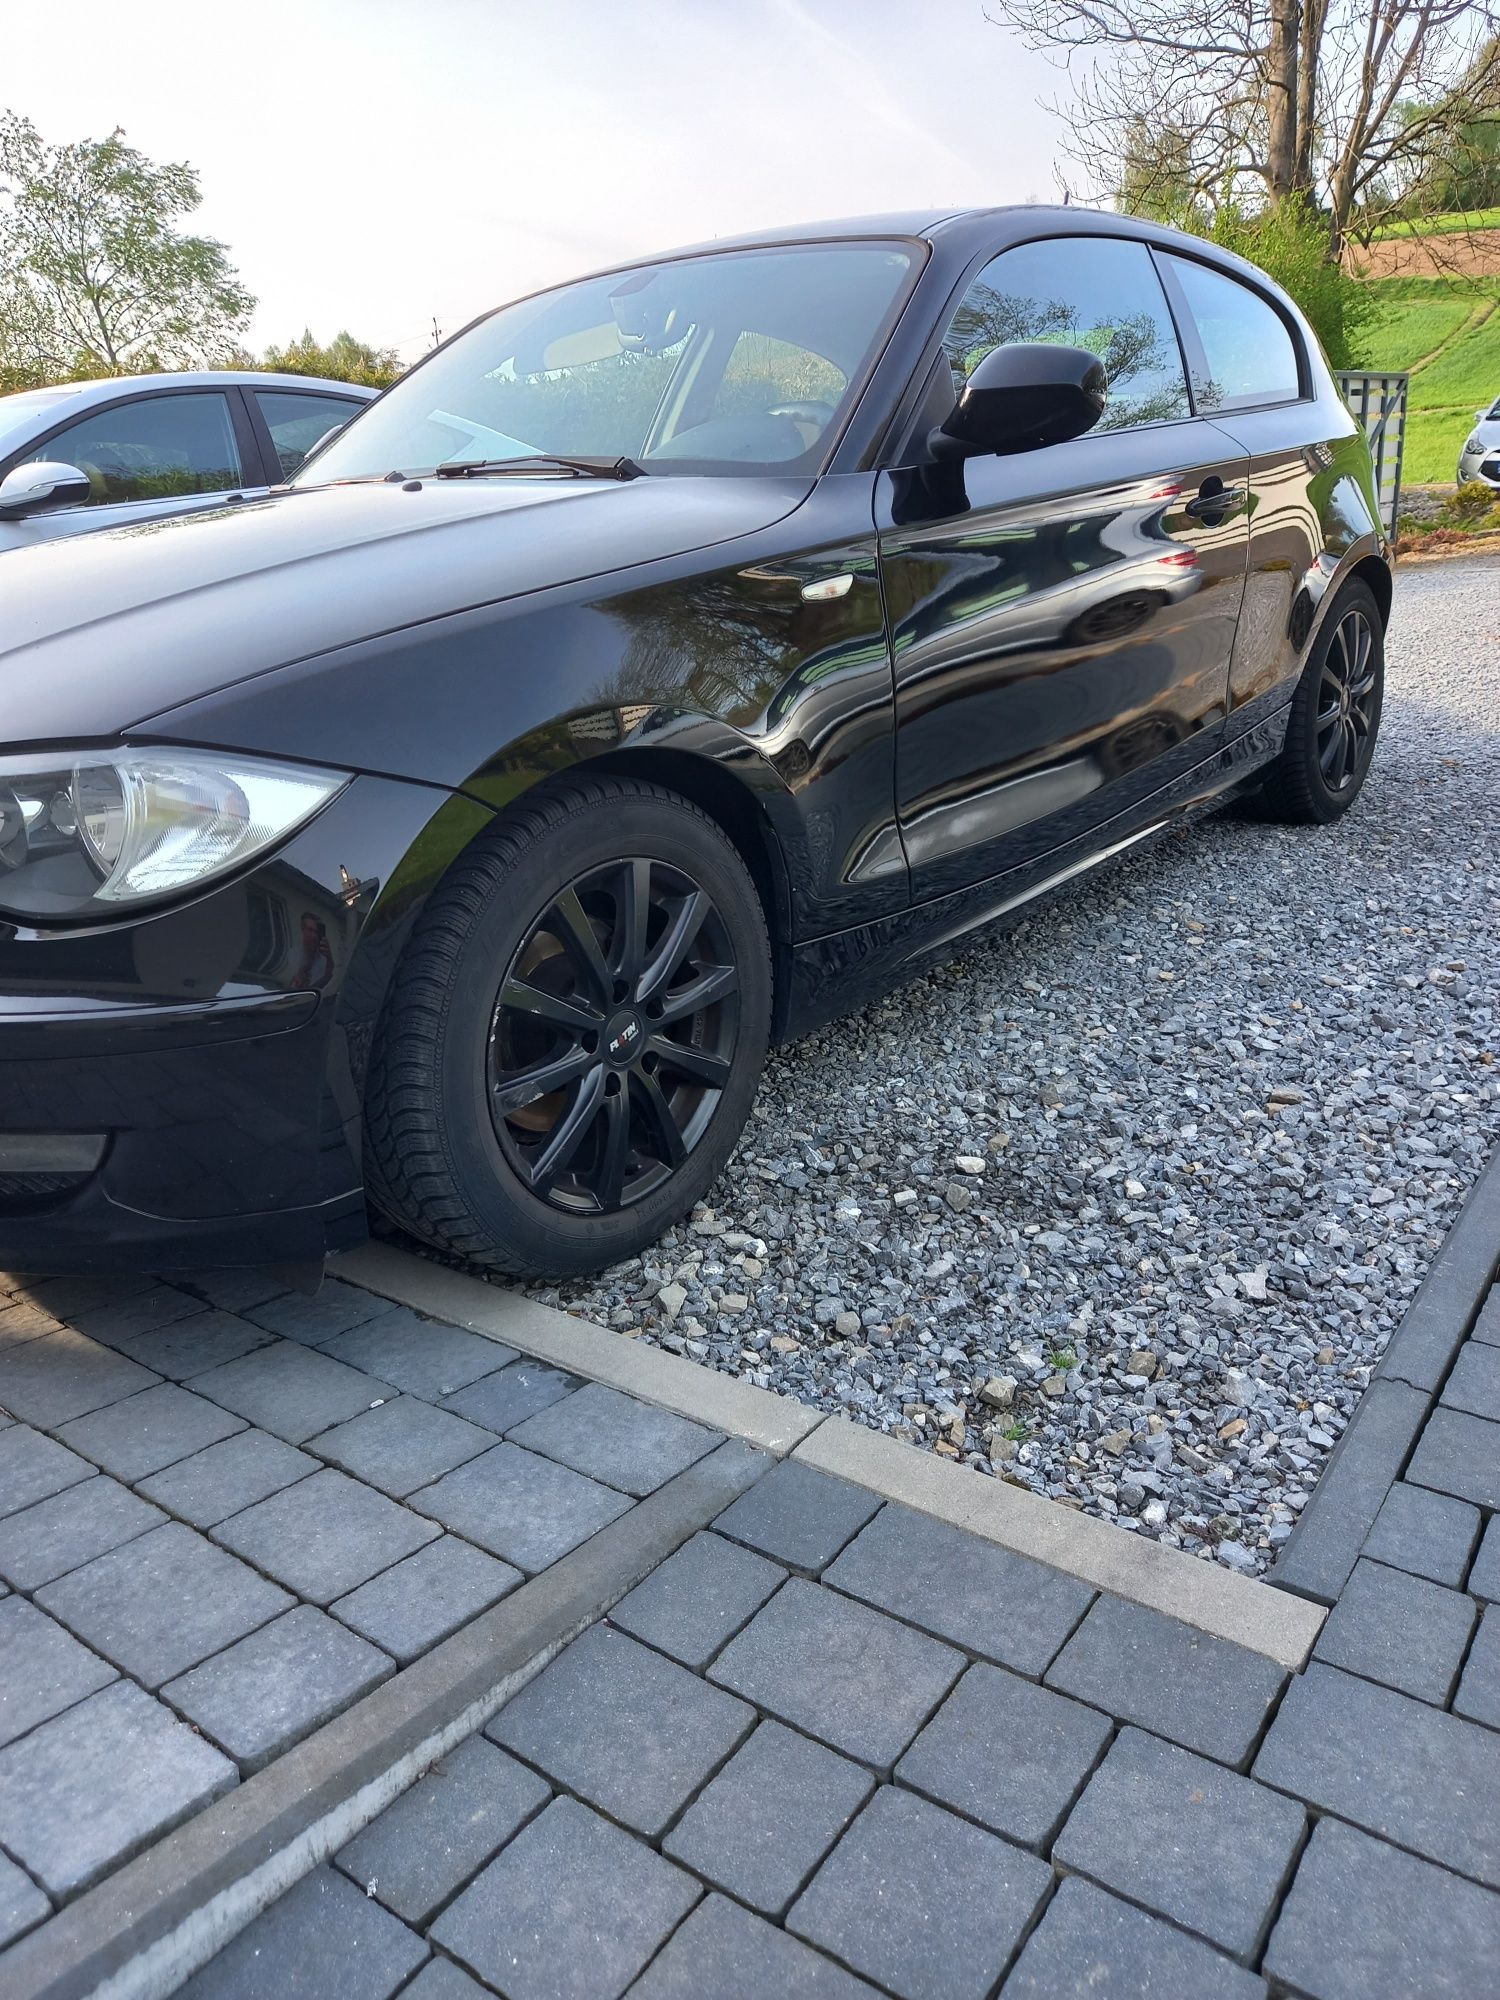 BMW e81 silnik M54b25 + gaz